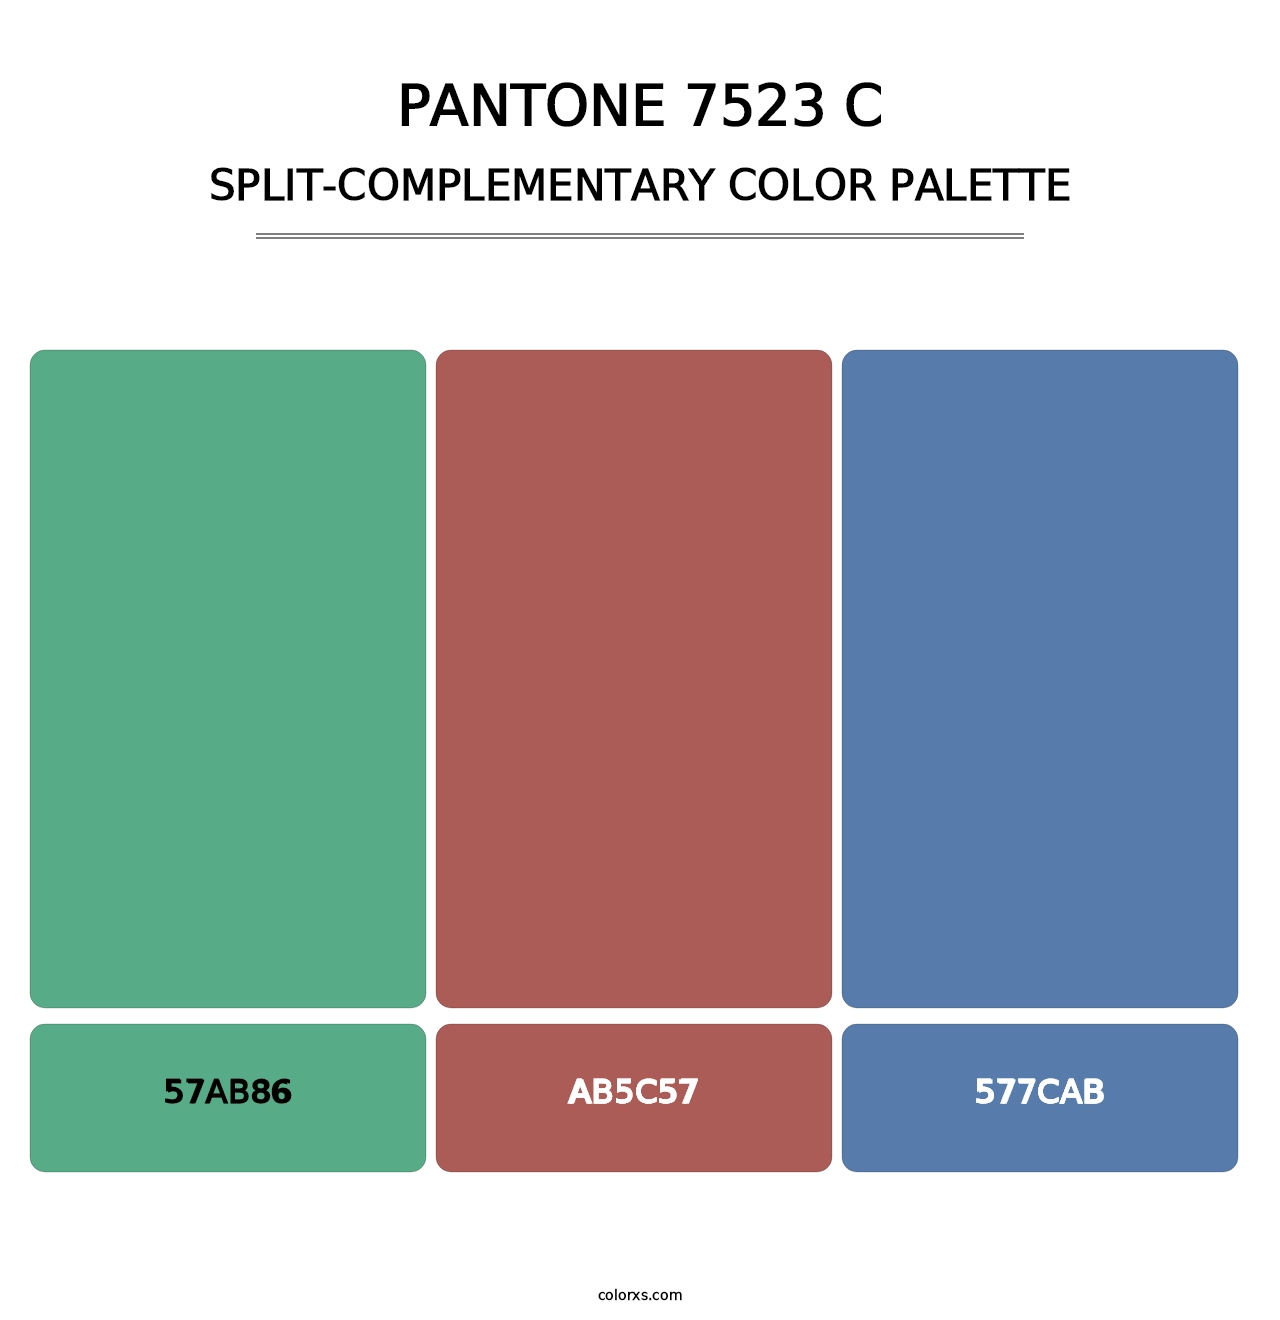 PANTONE 7523 C - Split-Complementary Color Palette